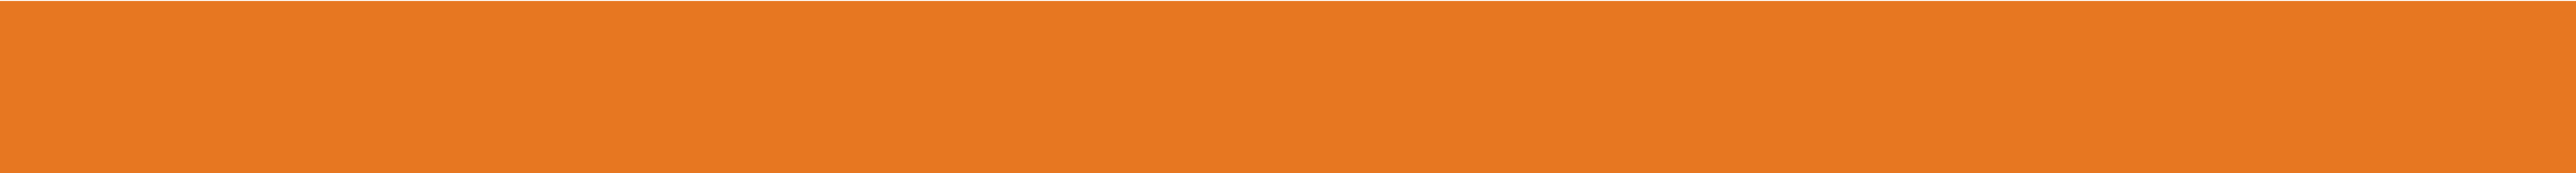 PNC - Orange bar